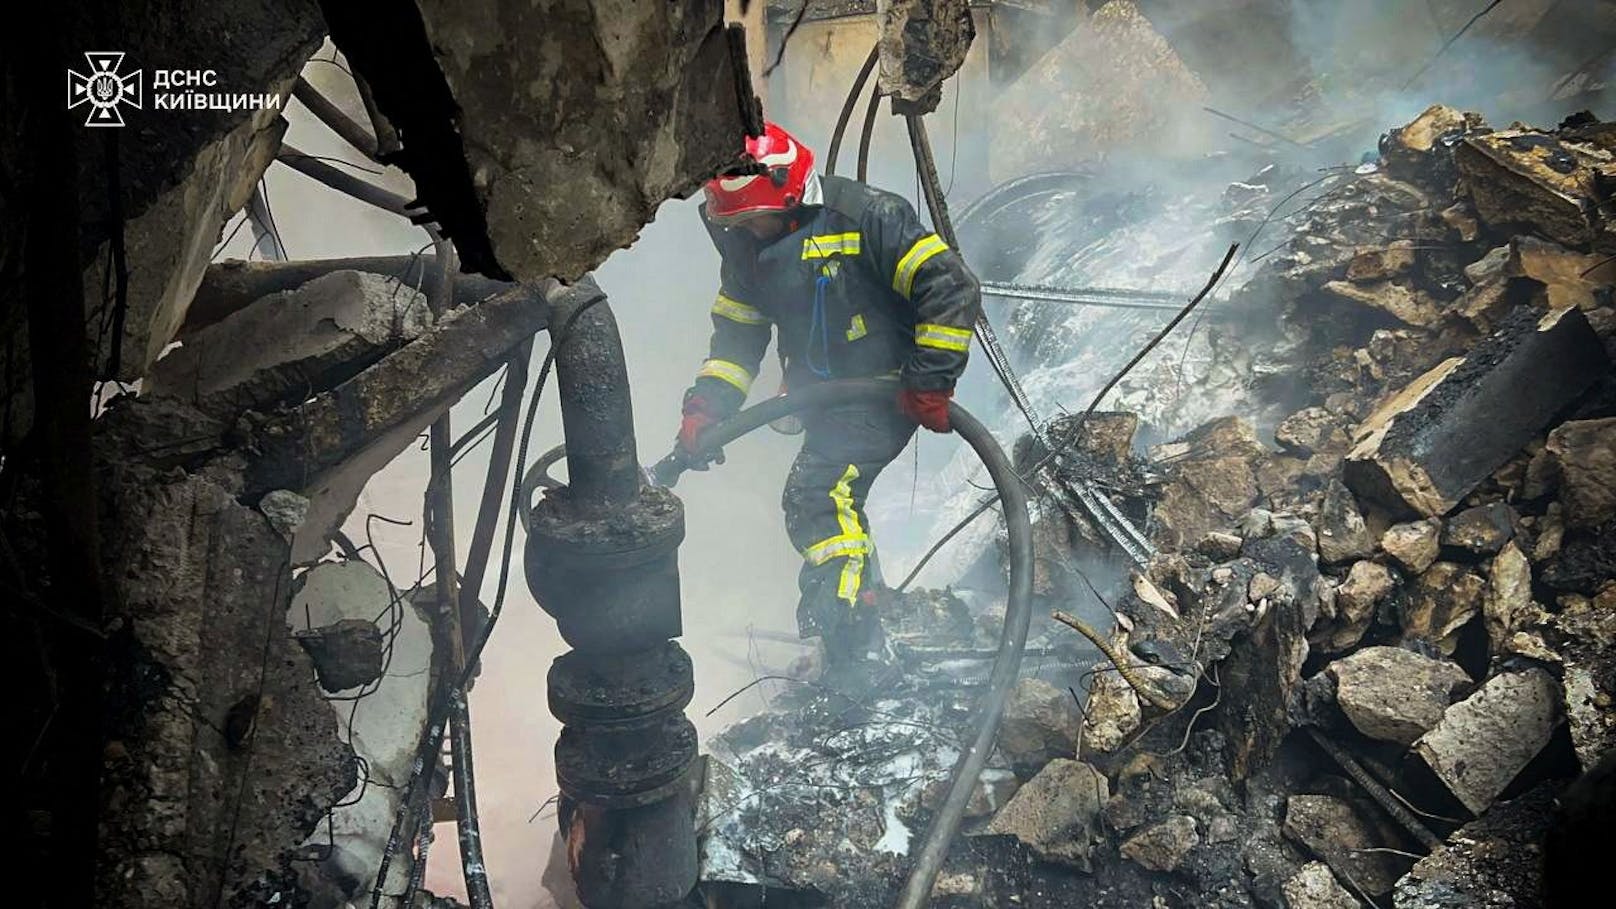 Feuerwehrleute retten 5 Welpen aus zerstörtem Haus